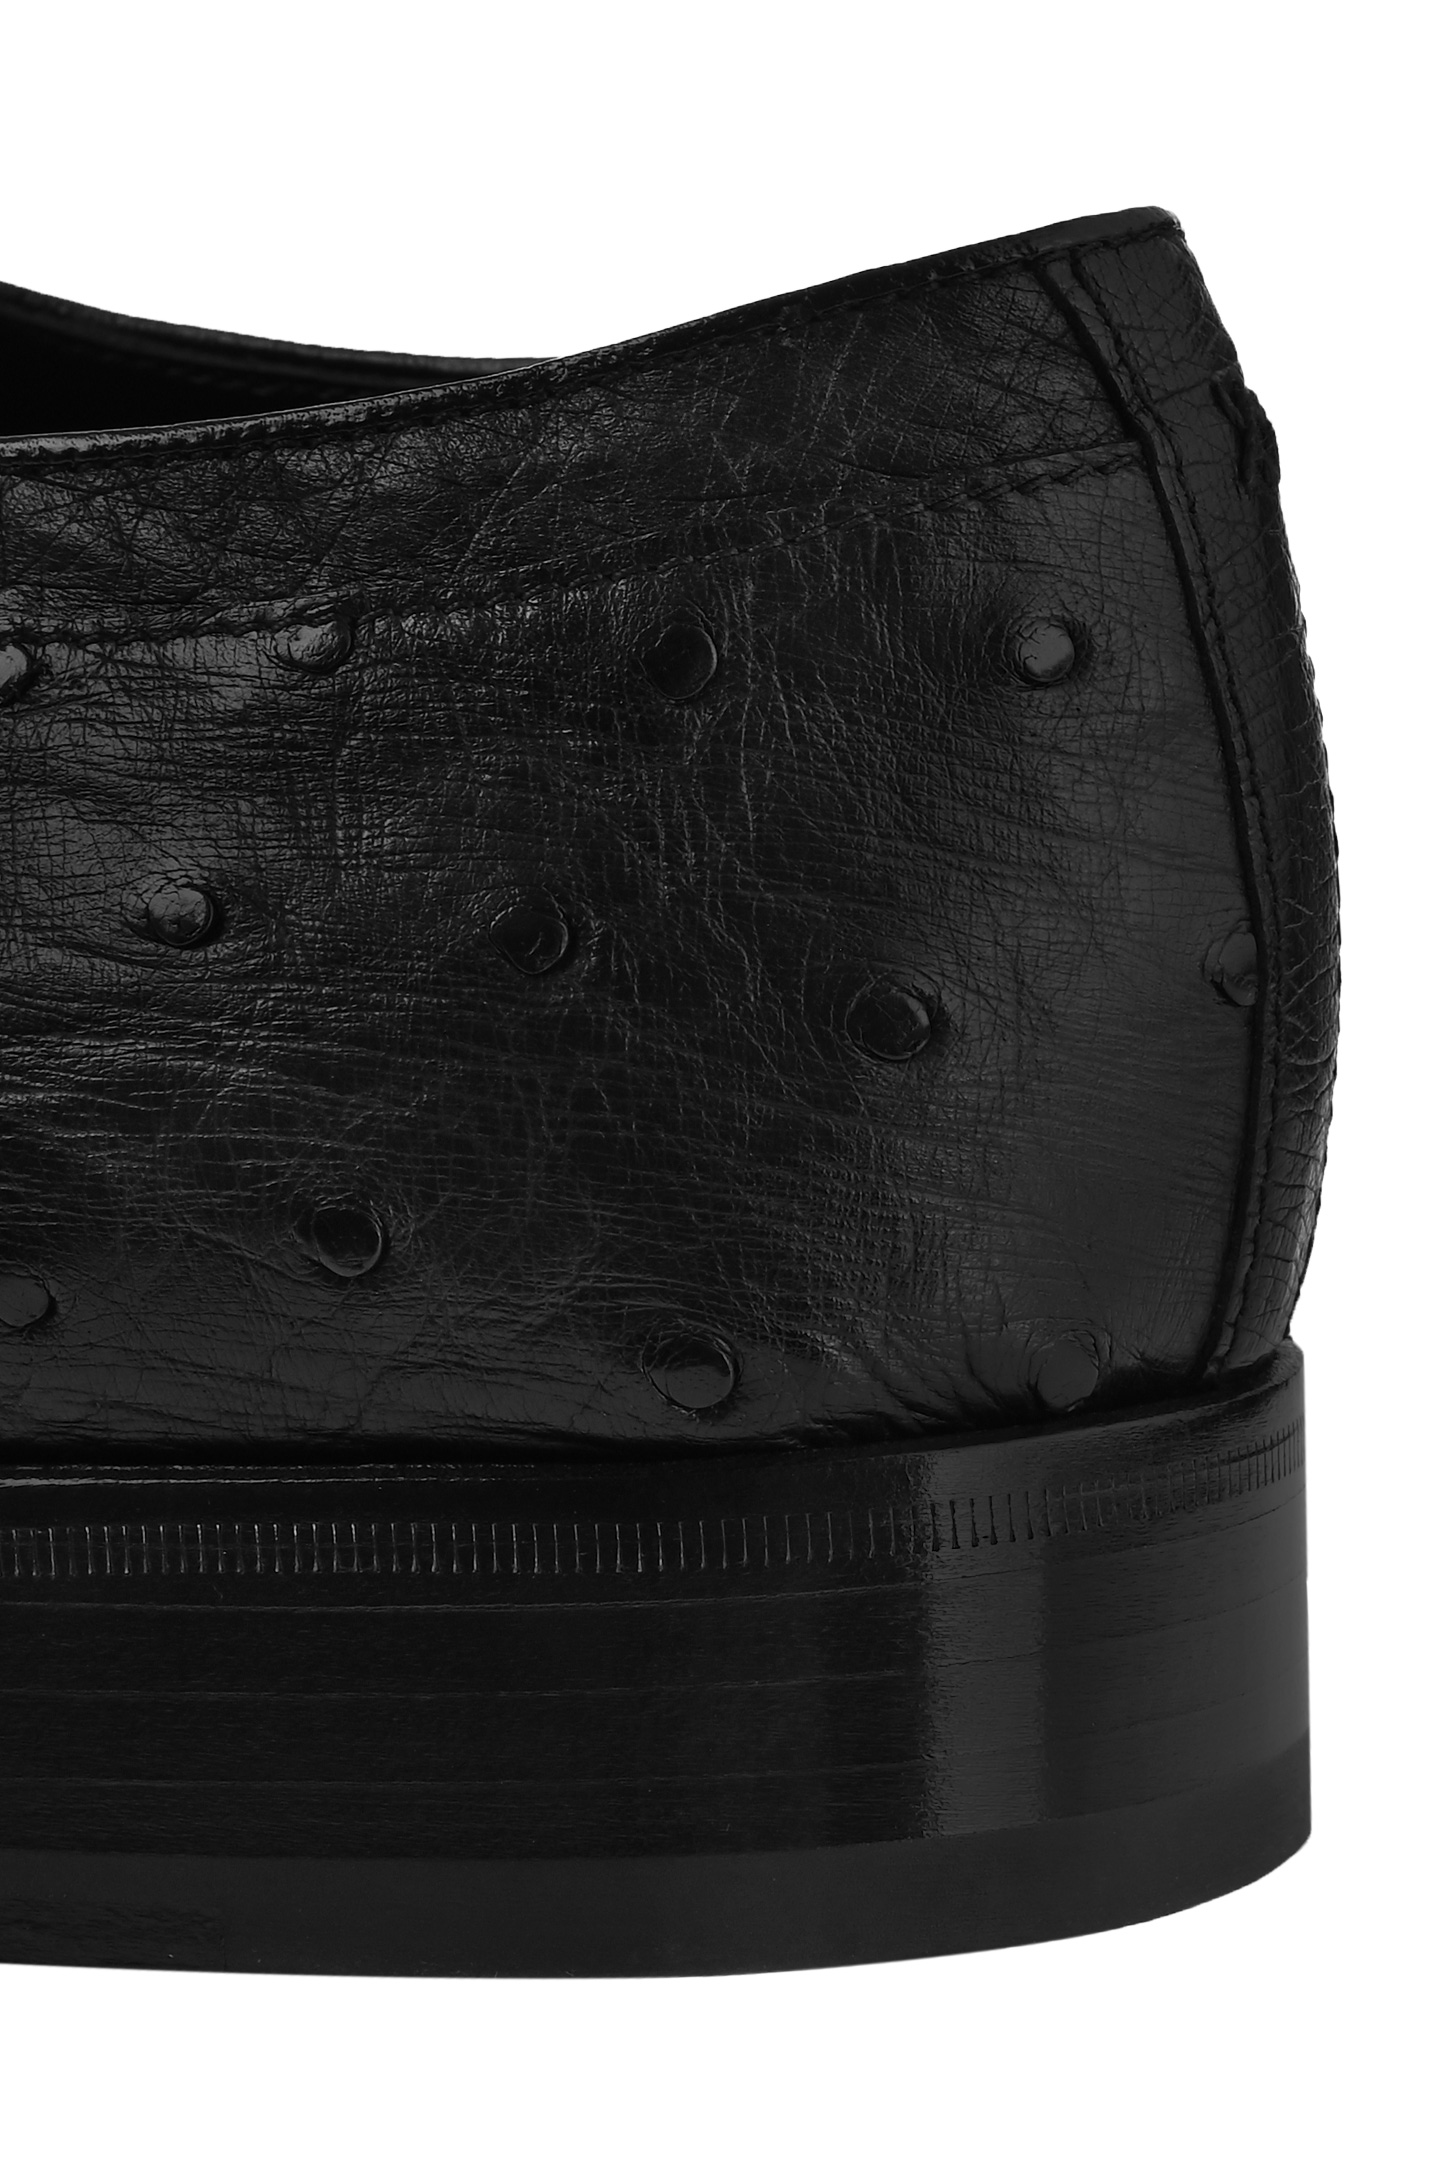 Туфли ARTIOLI 06S314, цвет: Черный, Мужской